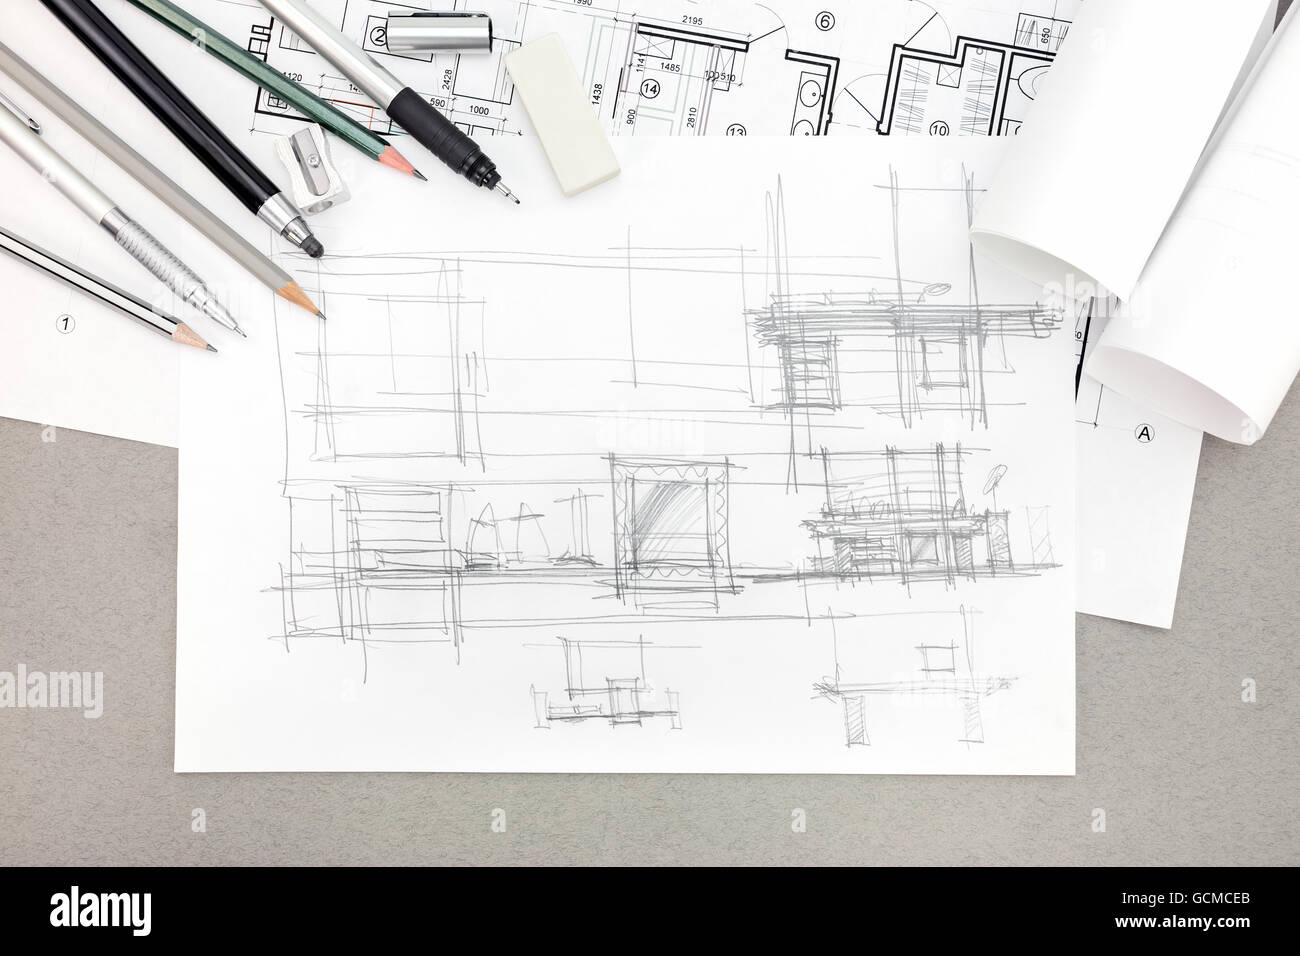 Concept de rénovation accueil croquis architectural avec des outils de dessin, vue de dessus Banque D'Images